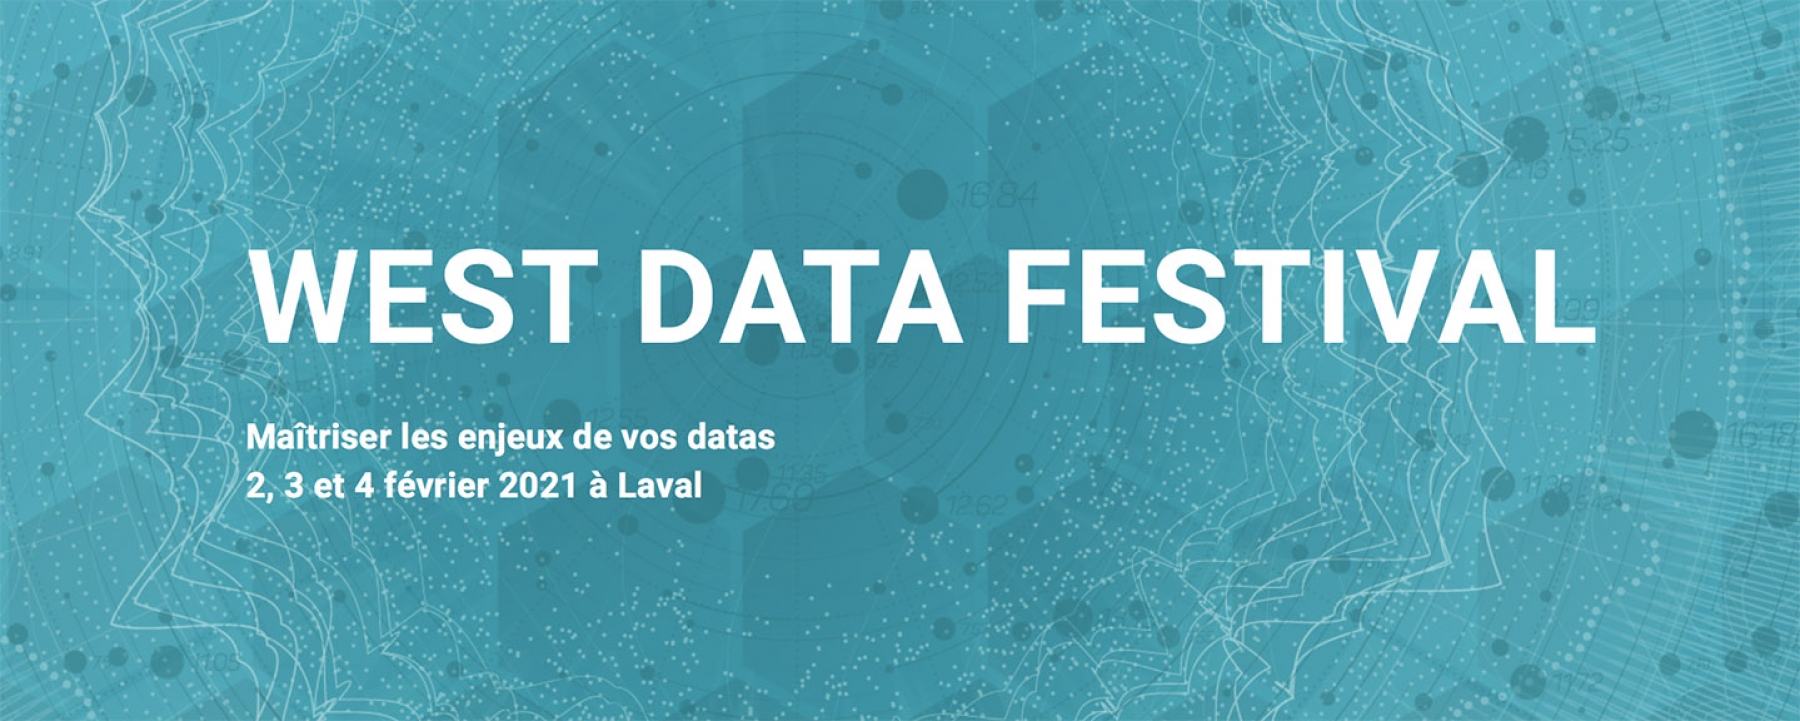 West Data Festival 2021, un événement organisé par Laval Mayenne Technopole du 2 au 4 février 2021